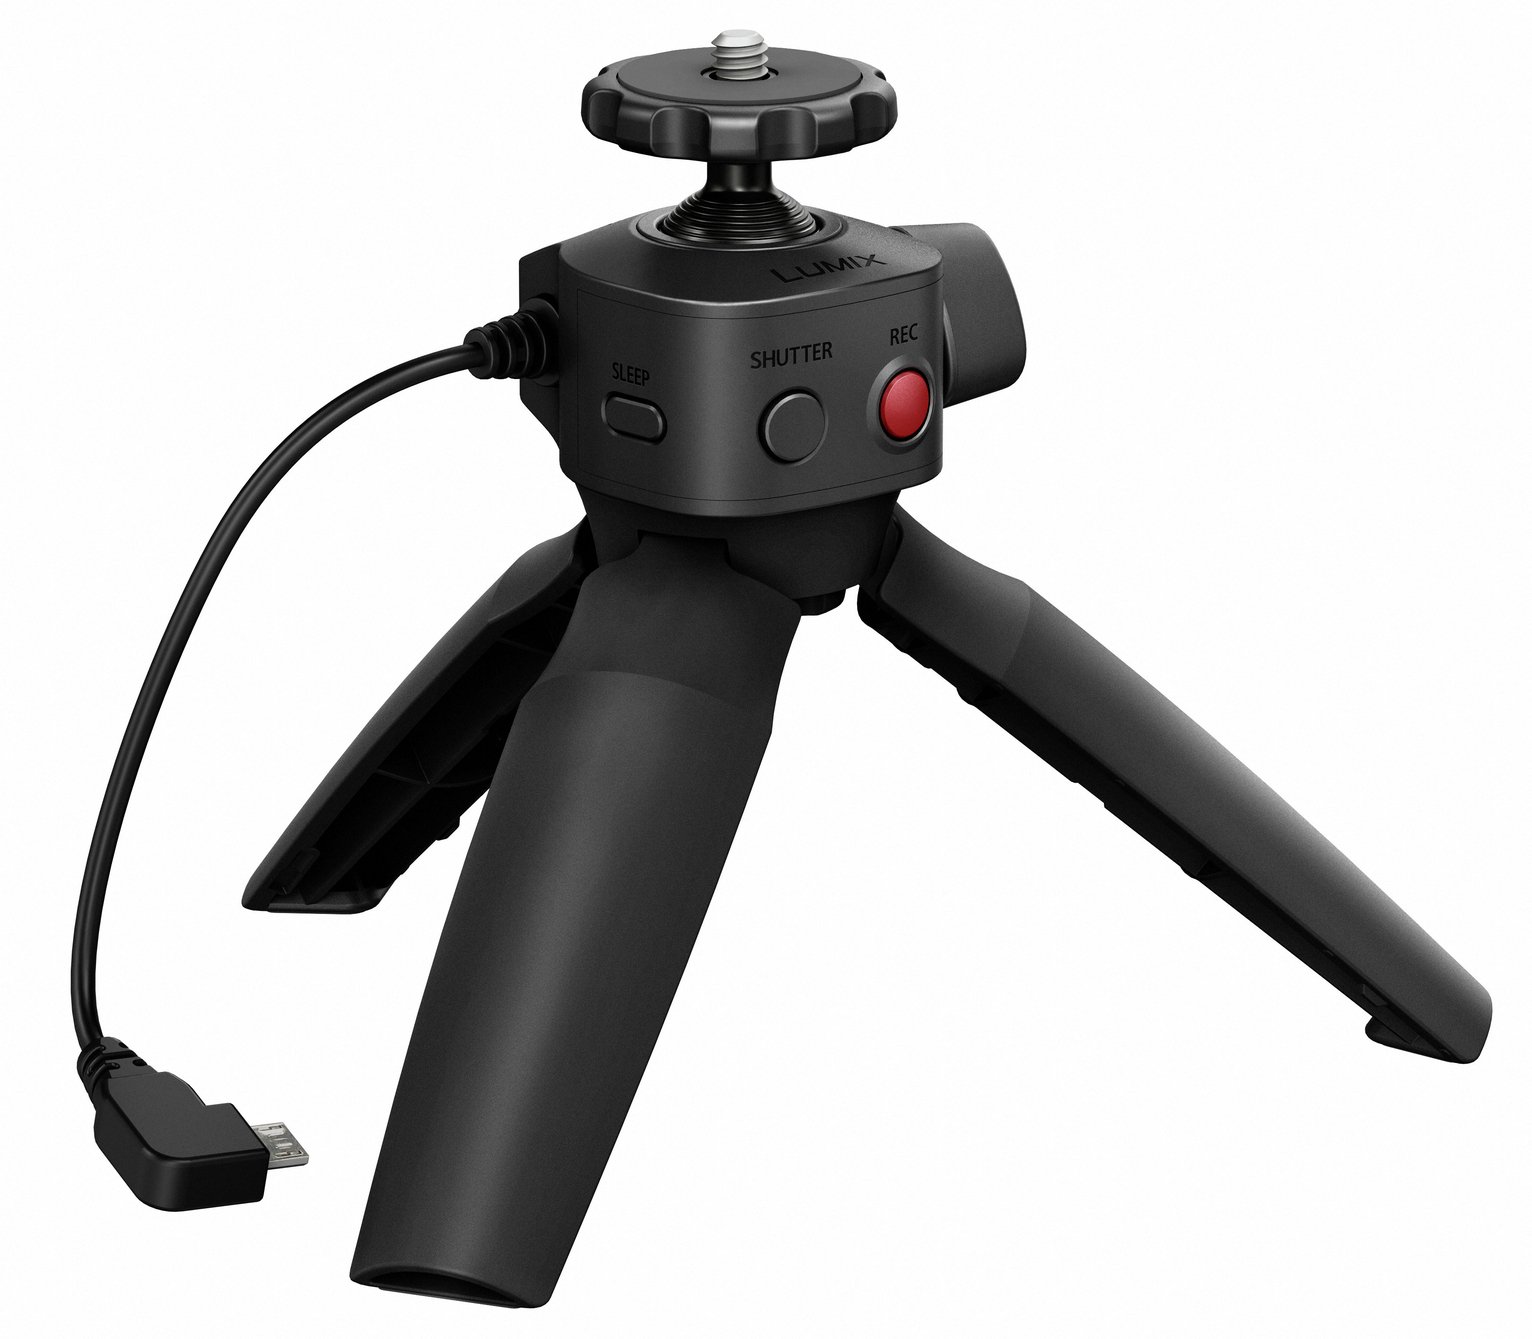 Panasonic LUMIX SHGR1 Tripod Grip Stabilizer for Vlog Camera Review